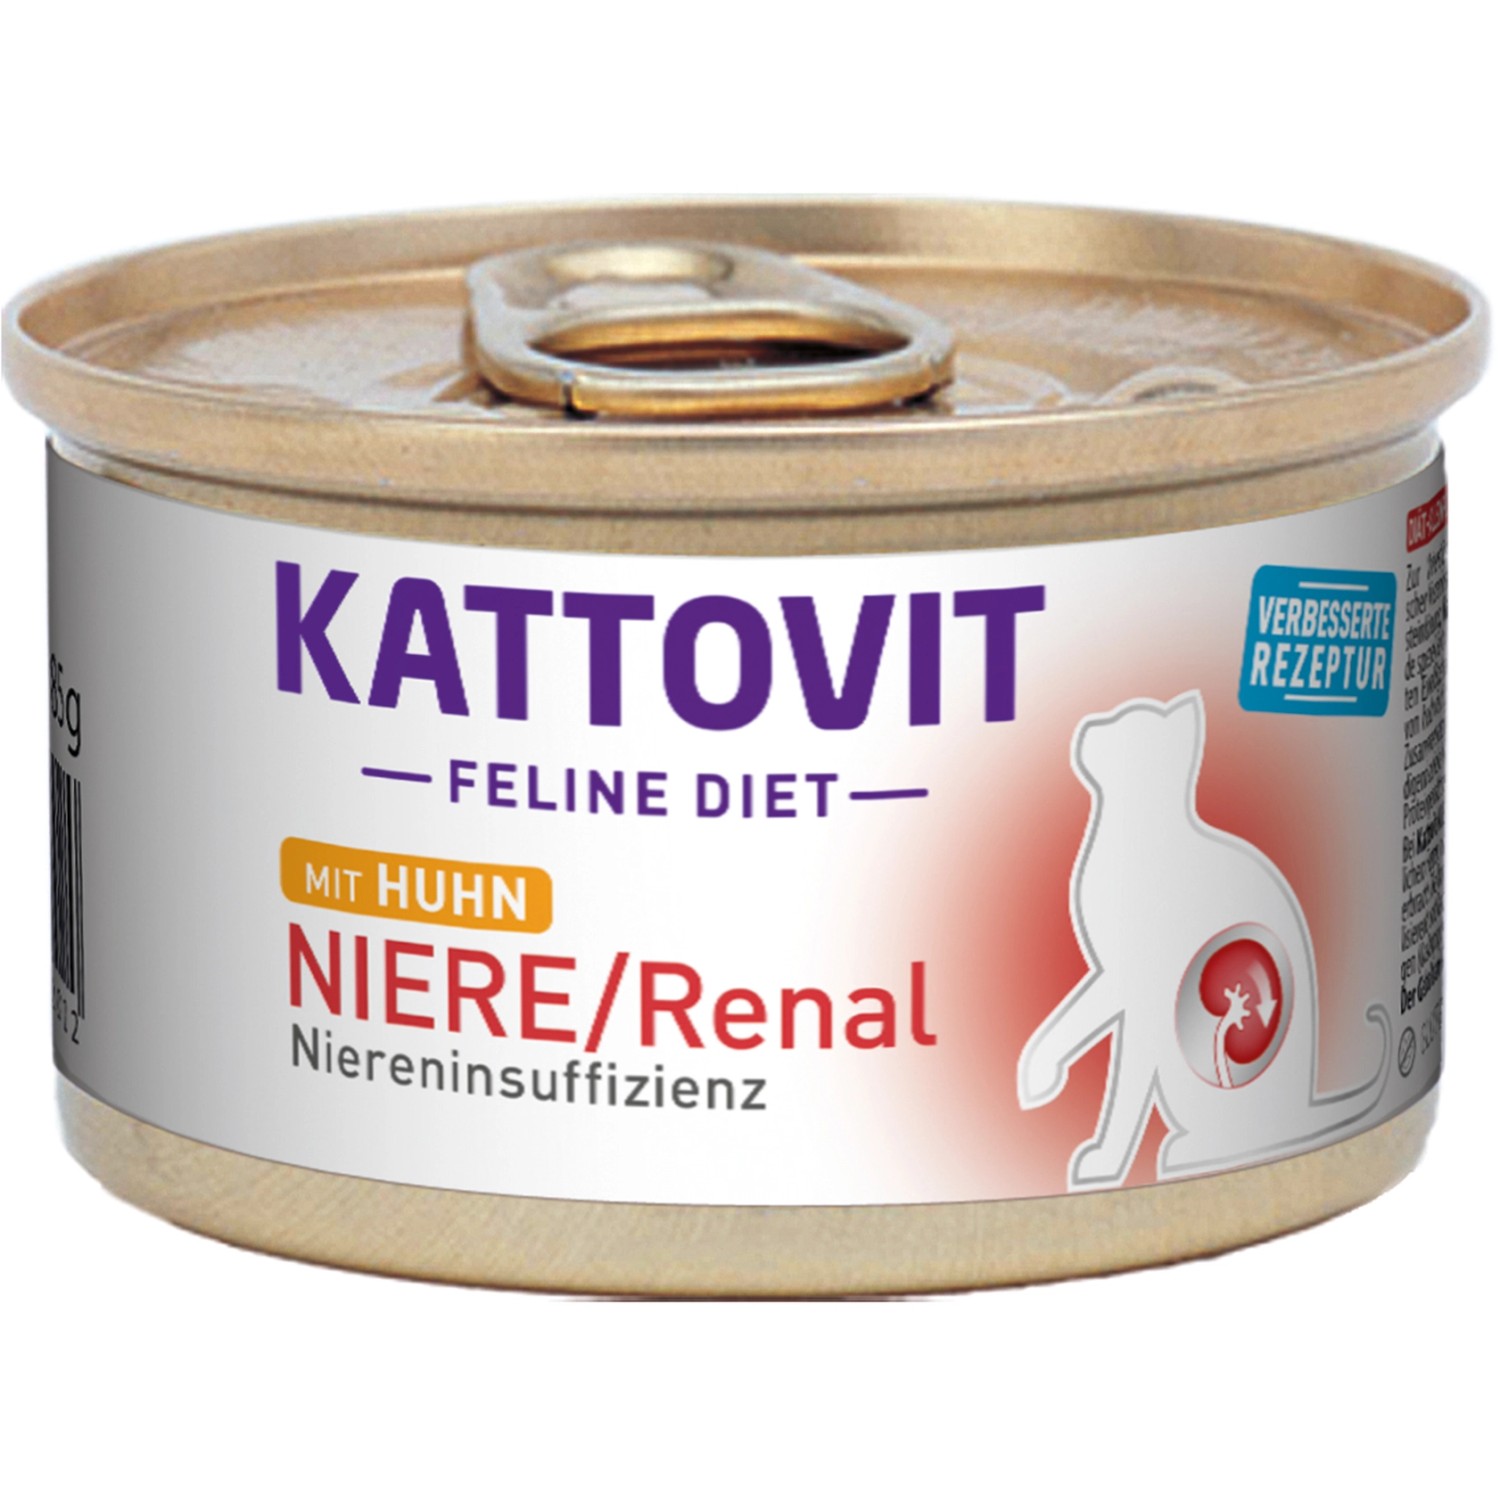 Kattovit Spezialfutter für Katzen Niere/Renal mit Huhn 85 g